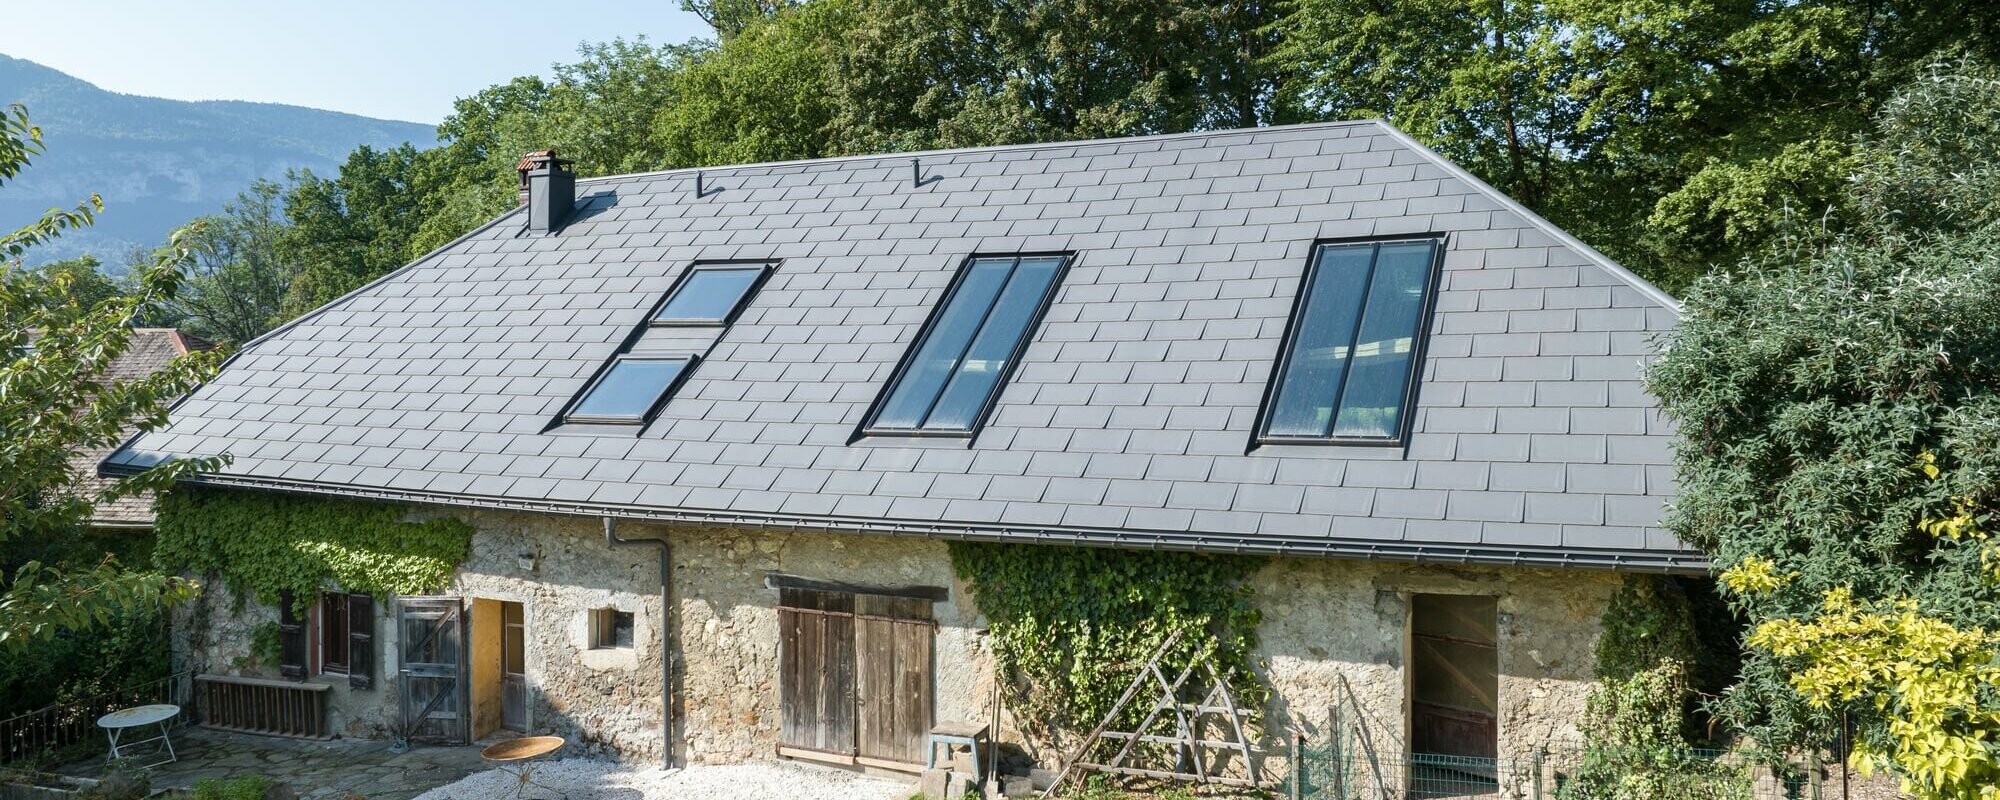 Vue latéral d'une ferme de Haute-Savoie avec un toit gris